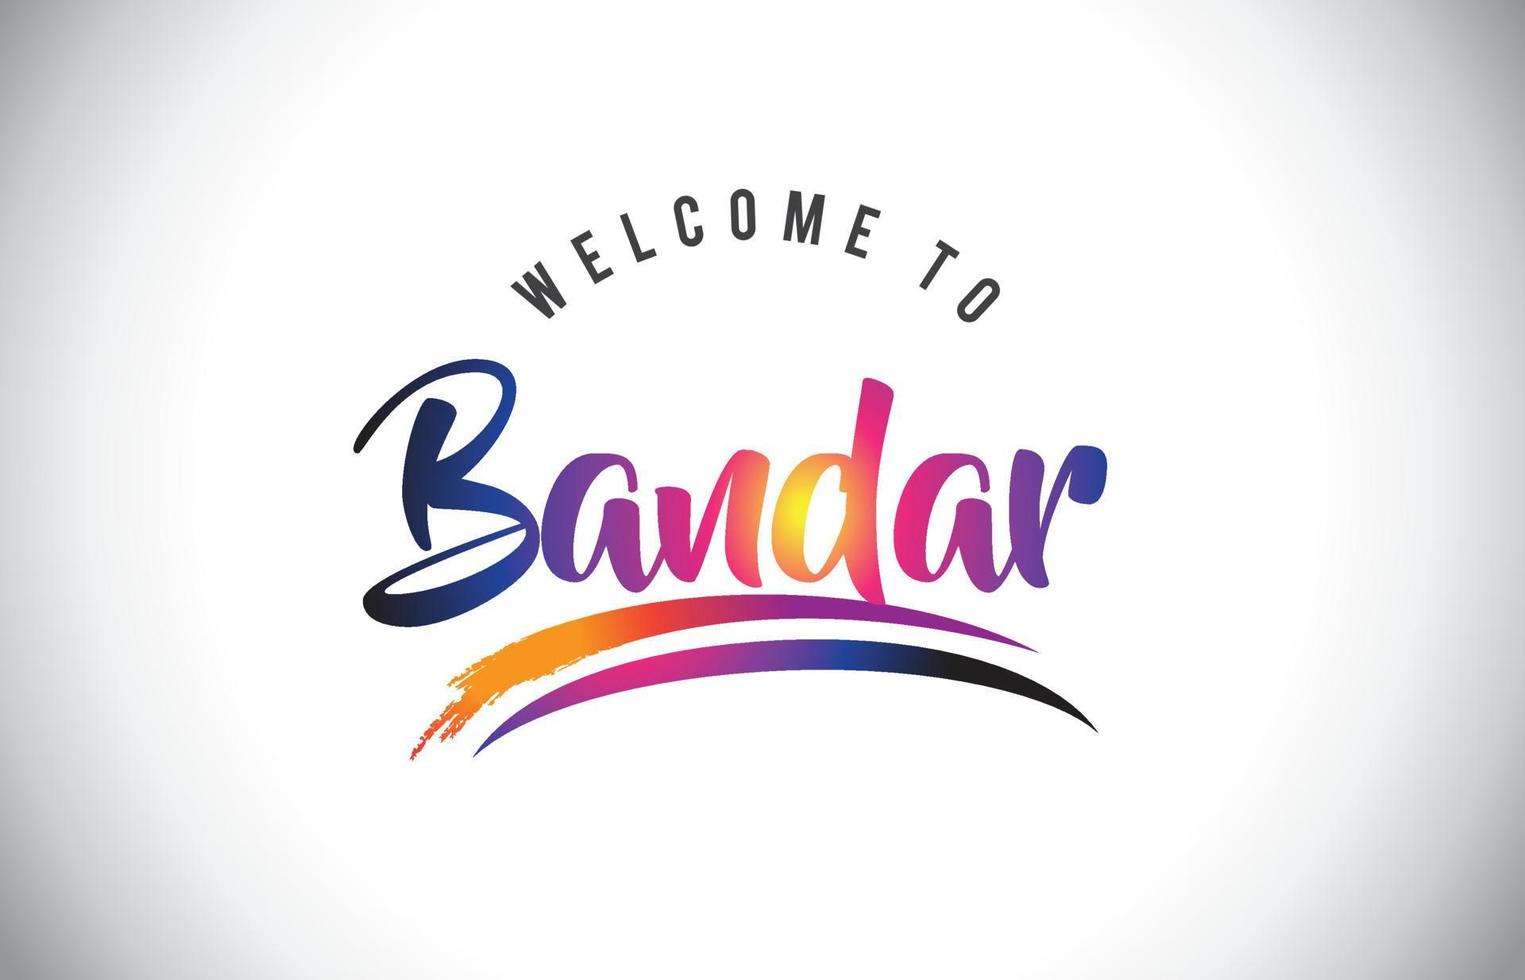 bandar bienvenido al mensaje en colores morados vibrantes y modernos. vector